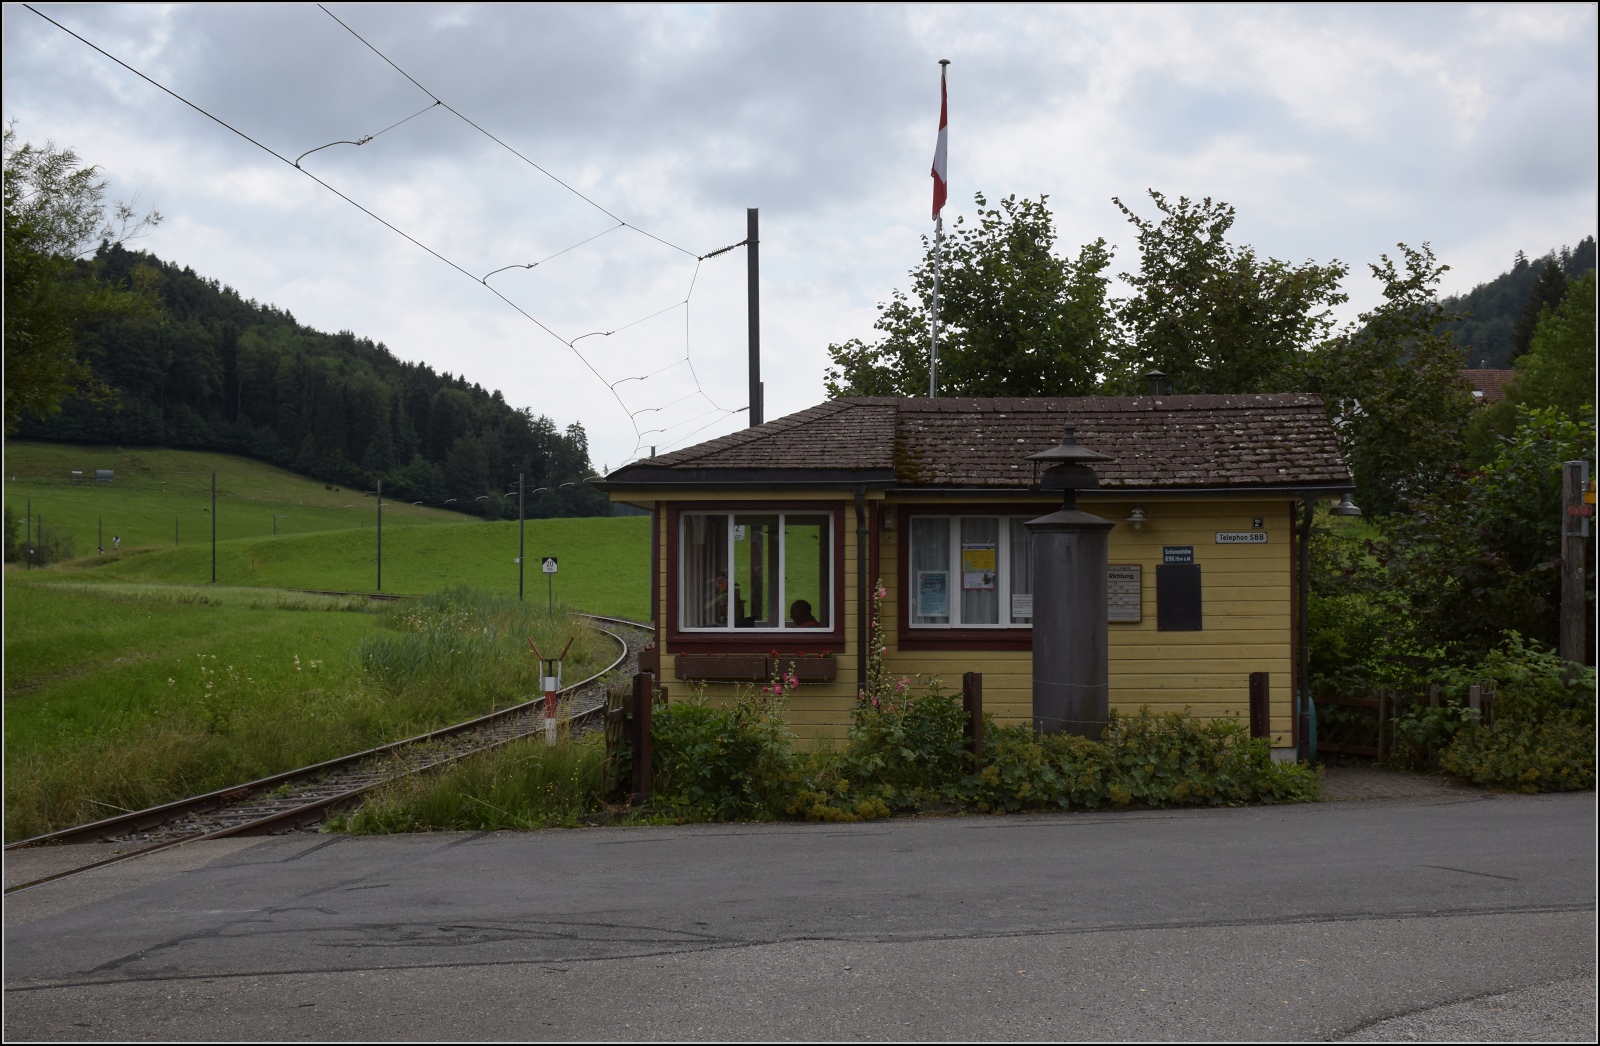 Fahrtag im Zrcher Oberland. Das Bahnwrterhuschen in Neuthal ist bedient. Juli 2023.